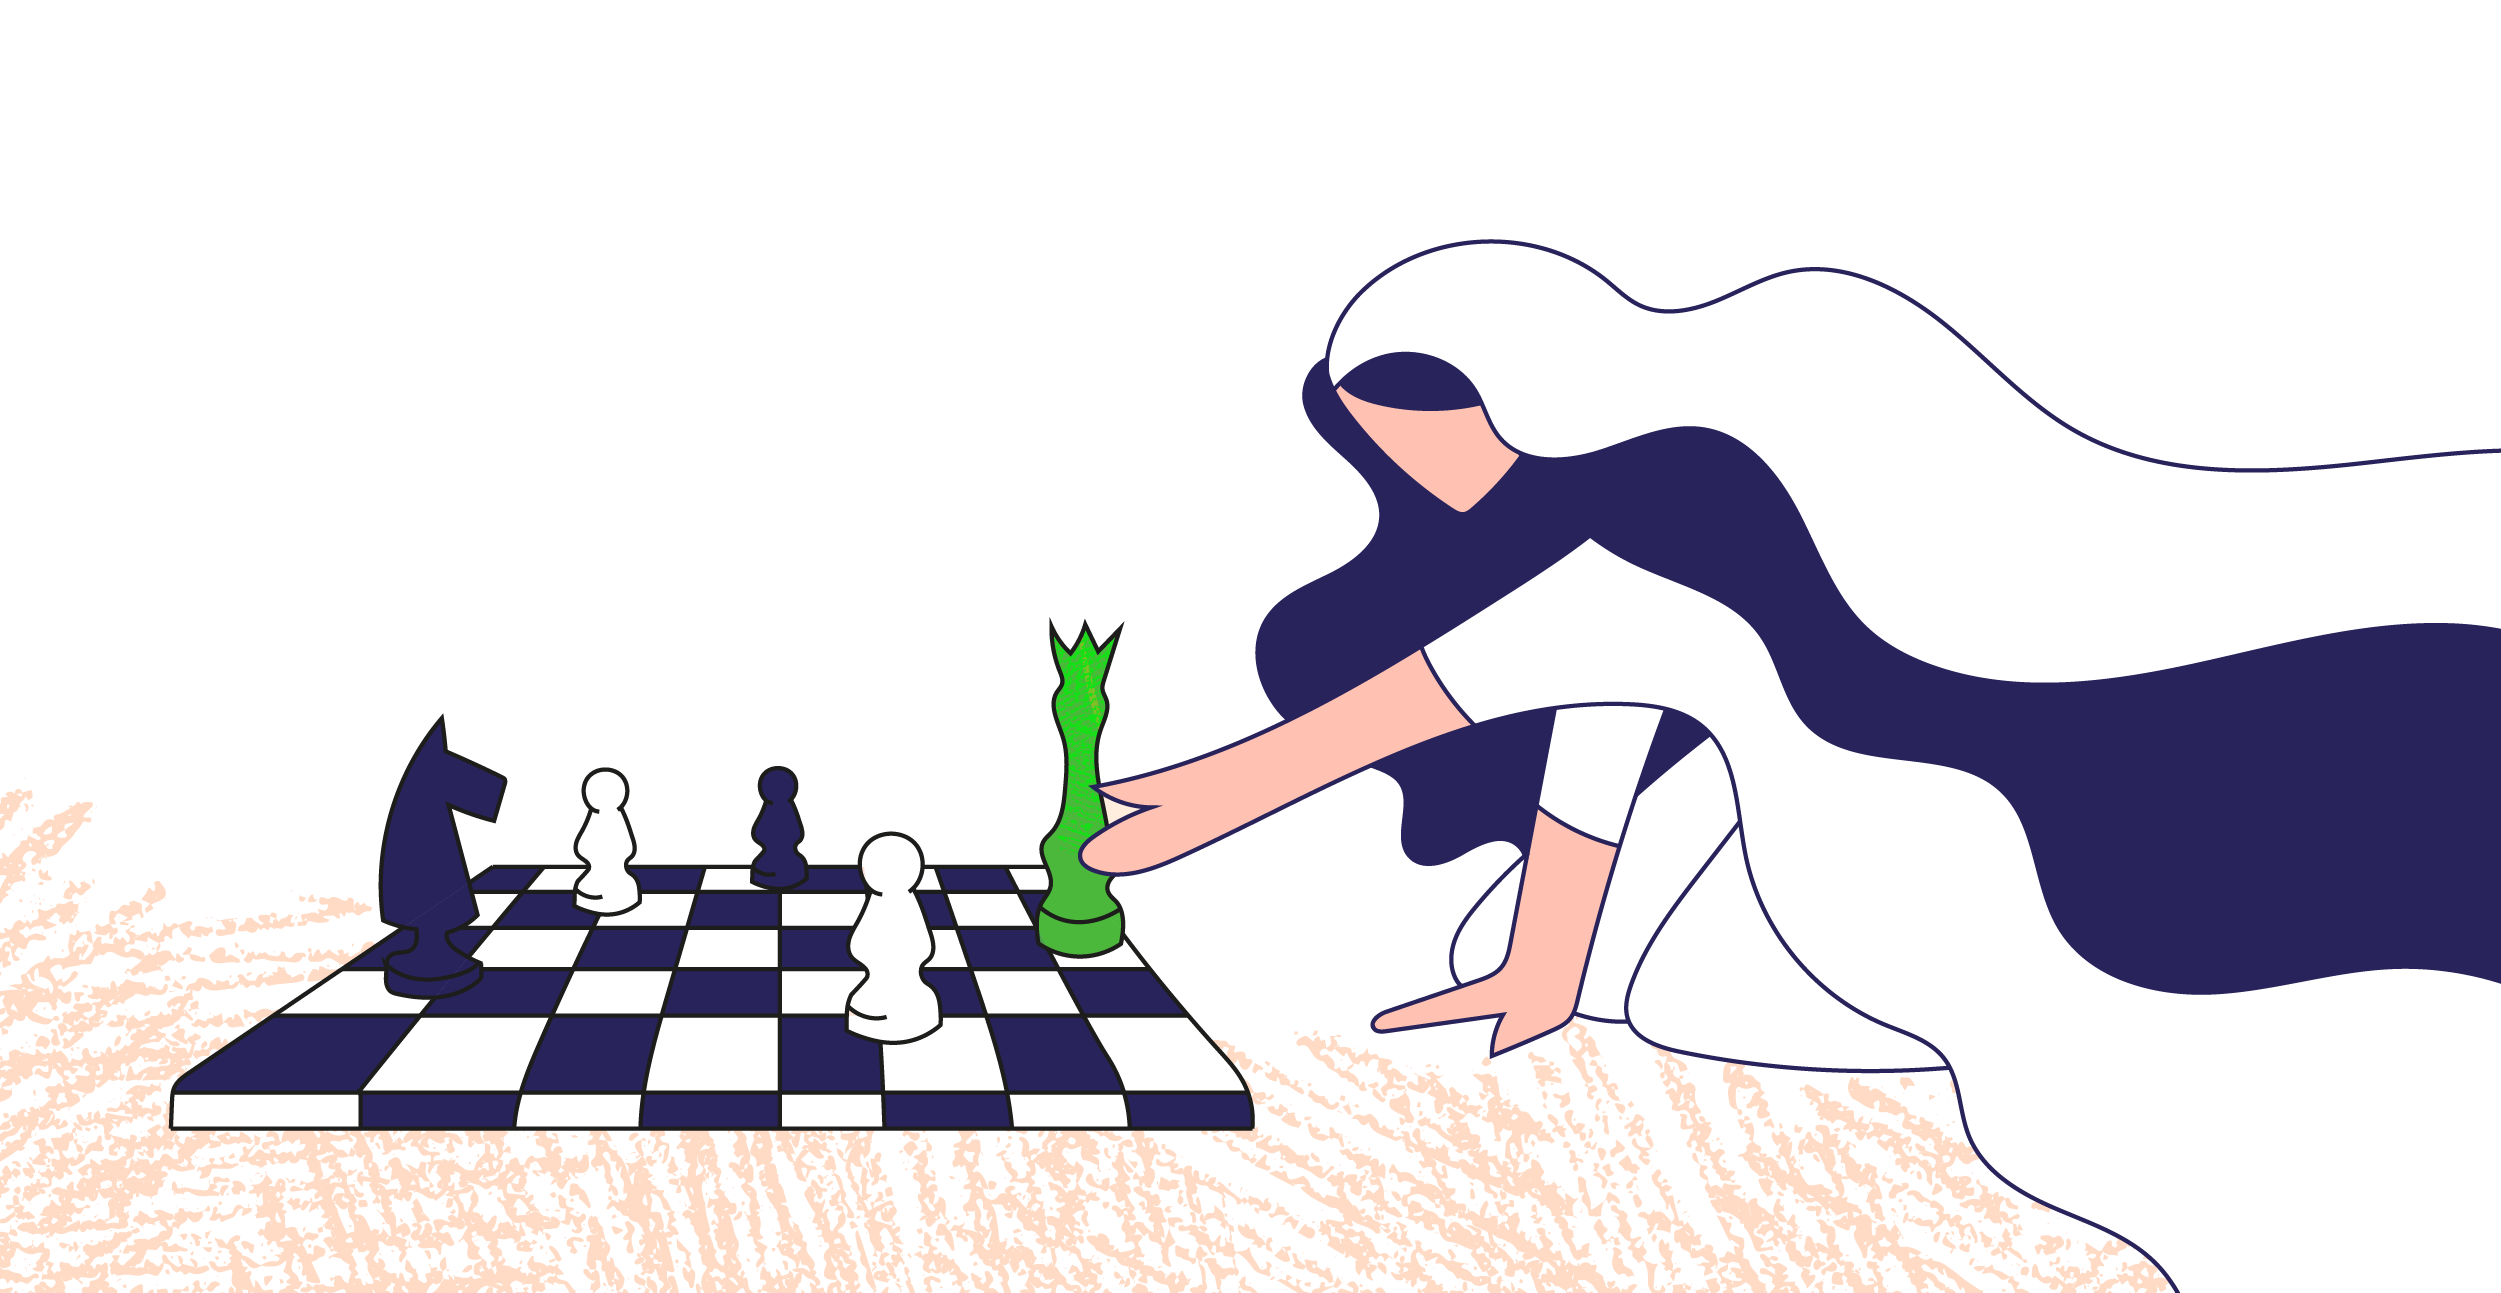 العروس تحرك الملكة على رقعة الشطرنج